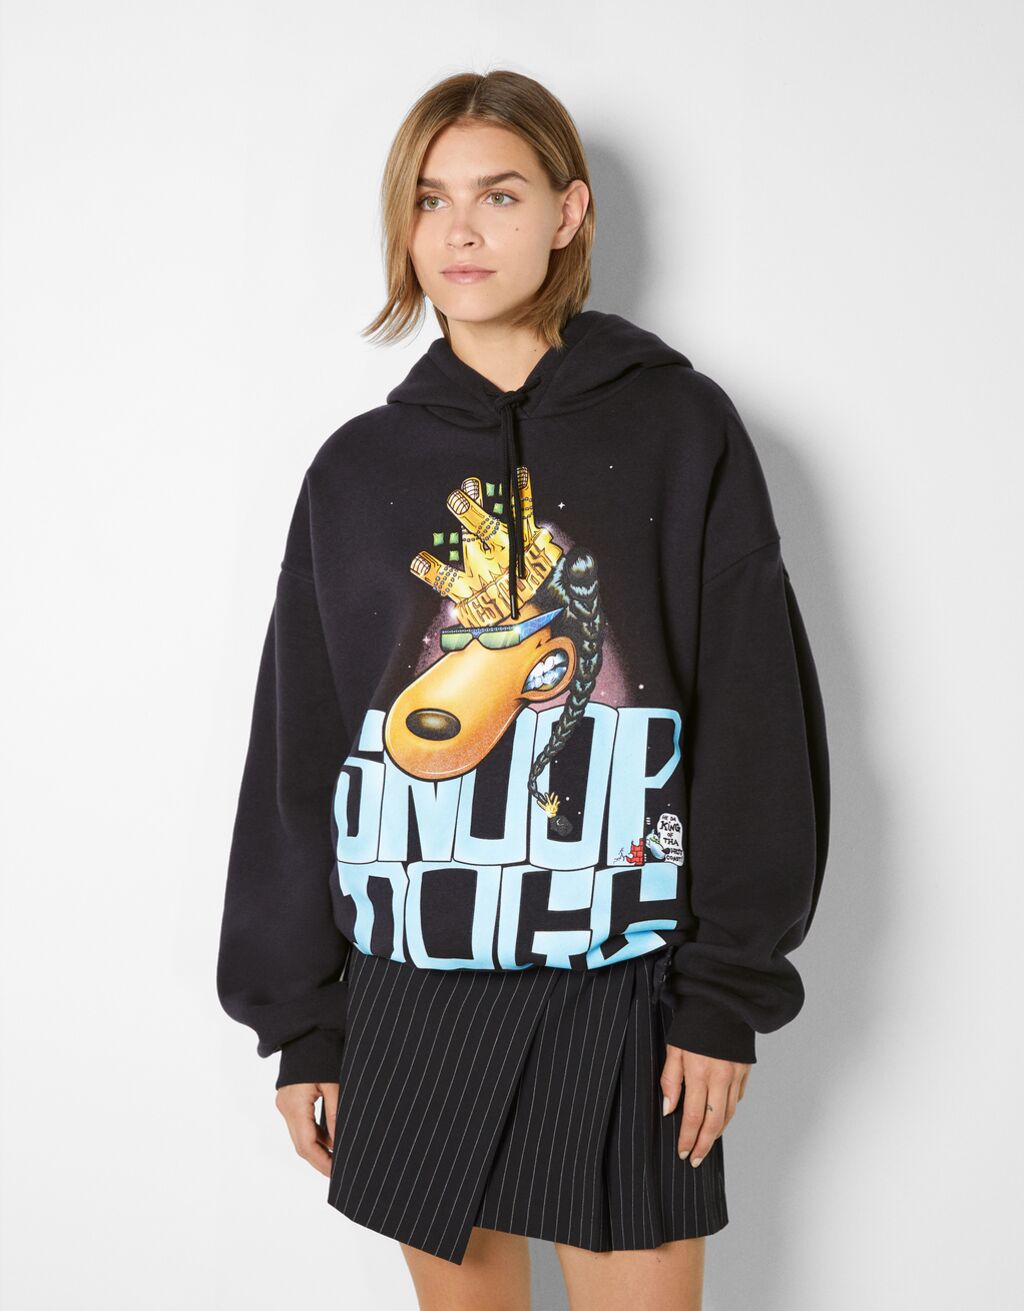 Snoop Dogg print hoodie